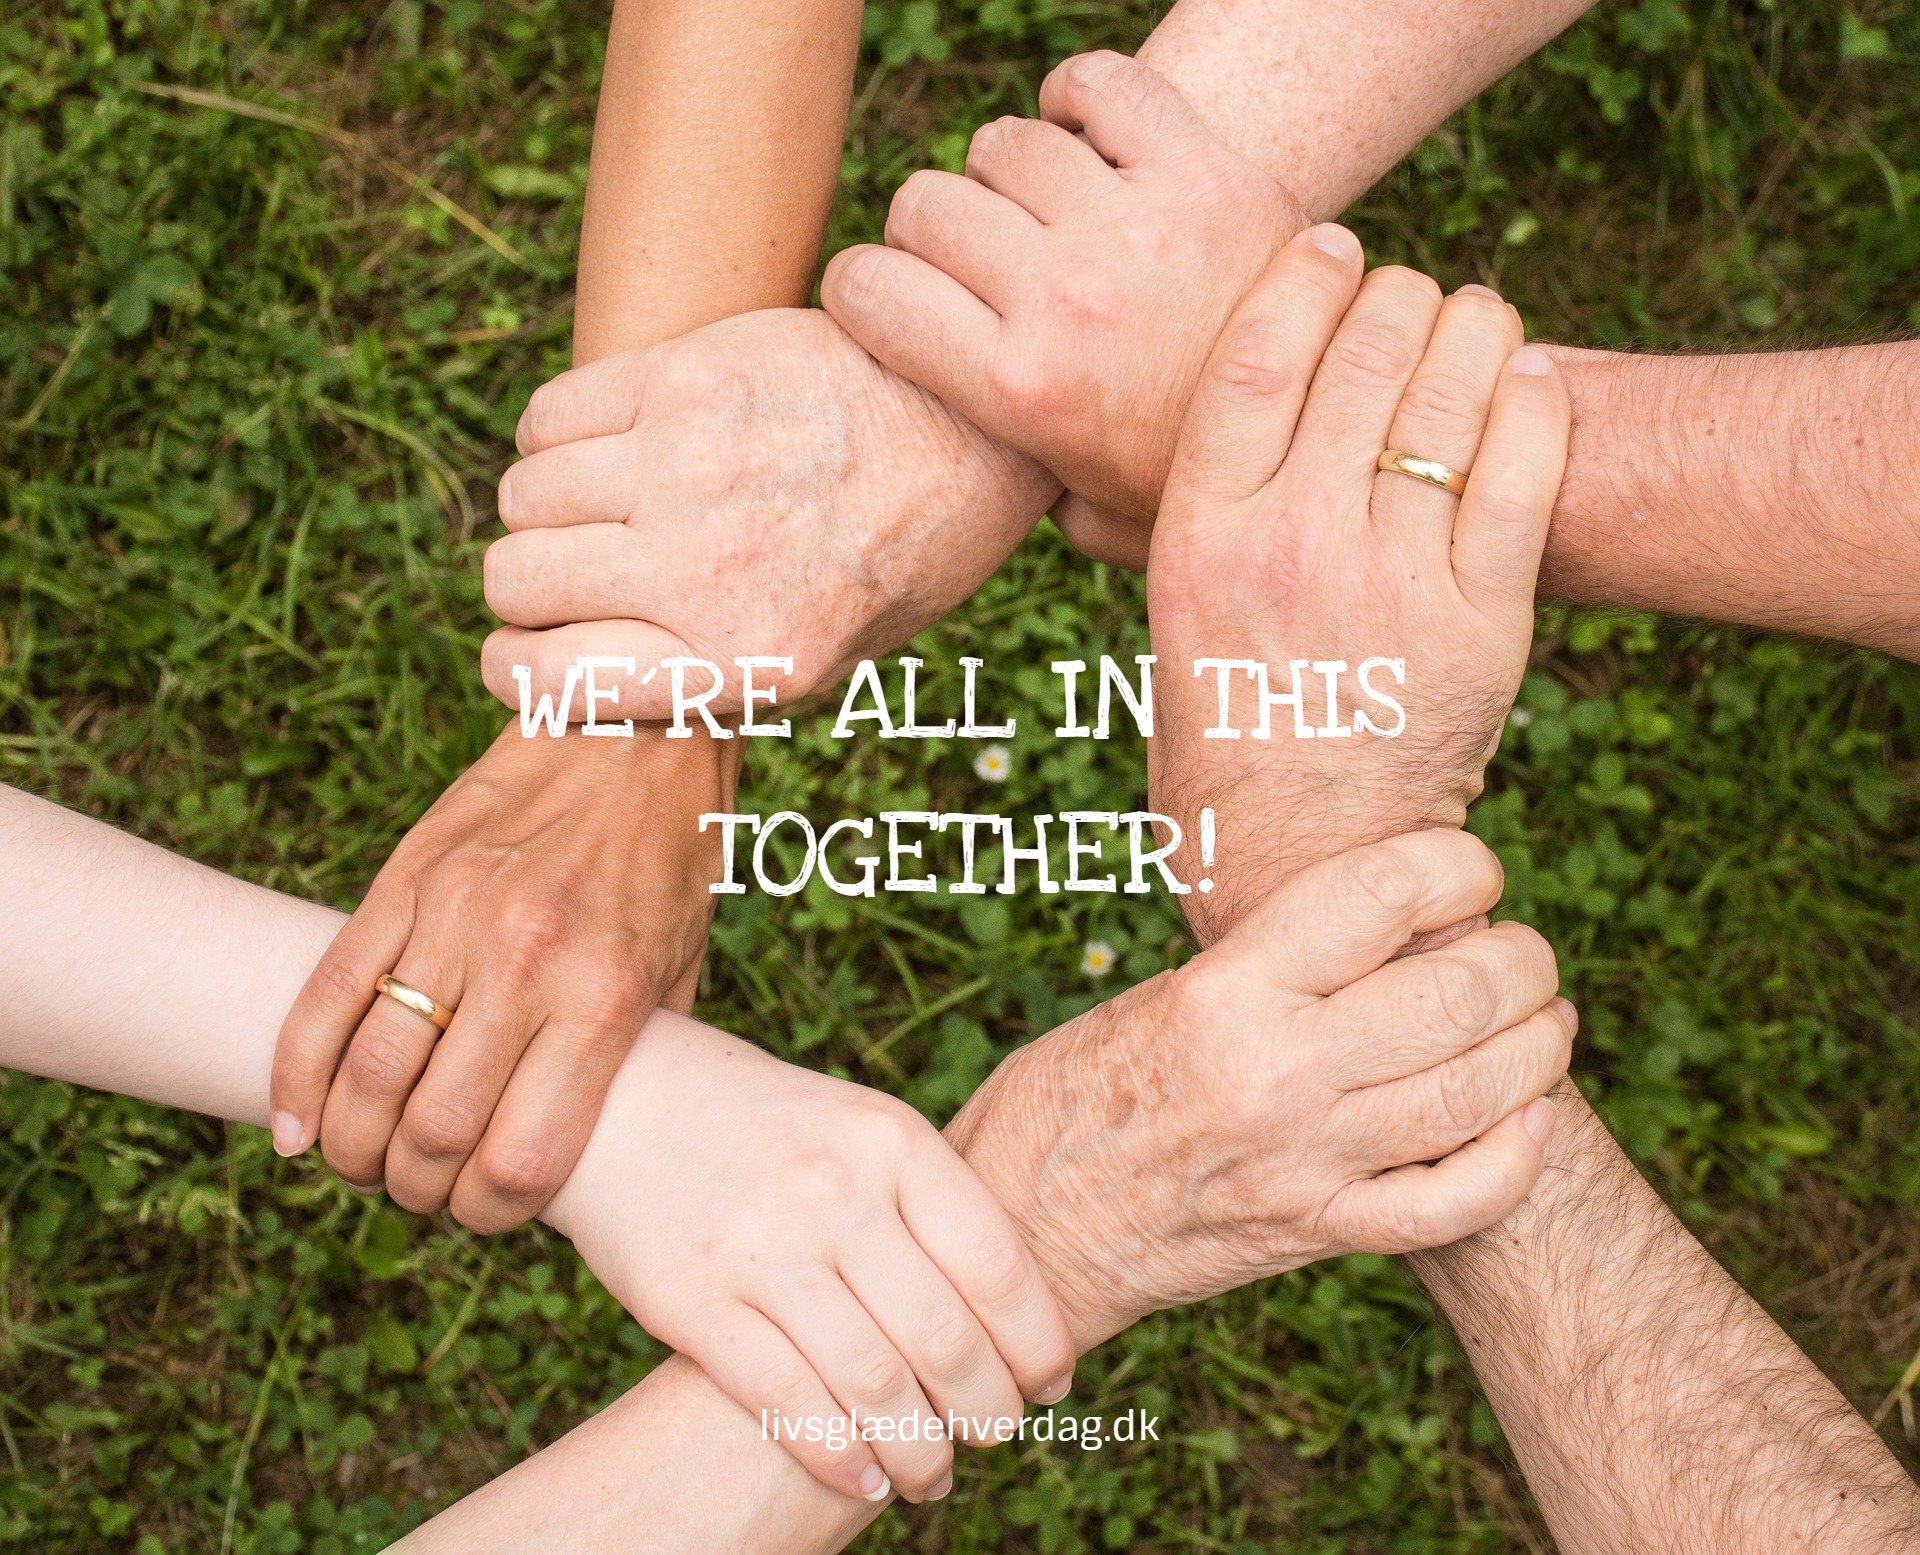 Seks hænder som griber om hinanden og teksten: We´re all in this together!